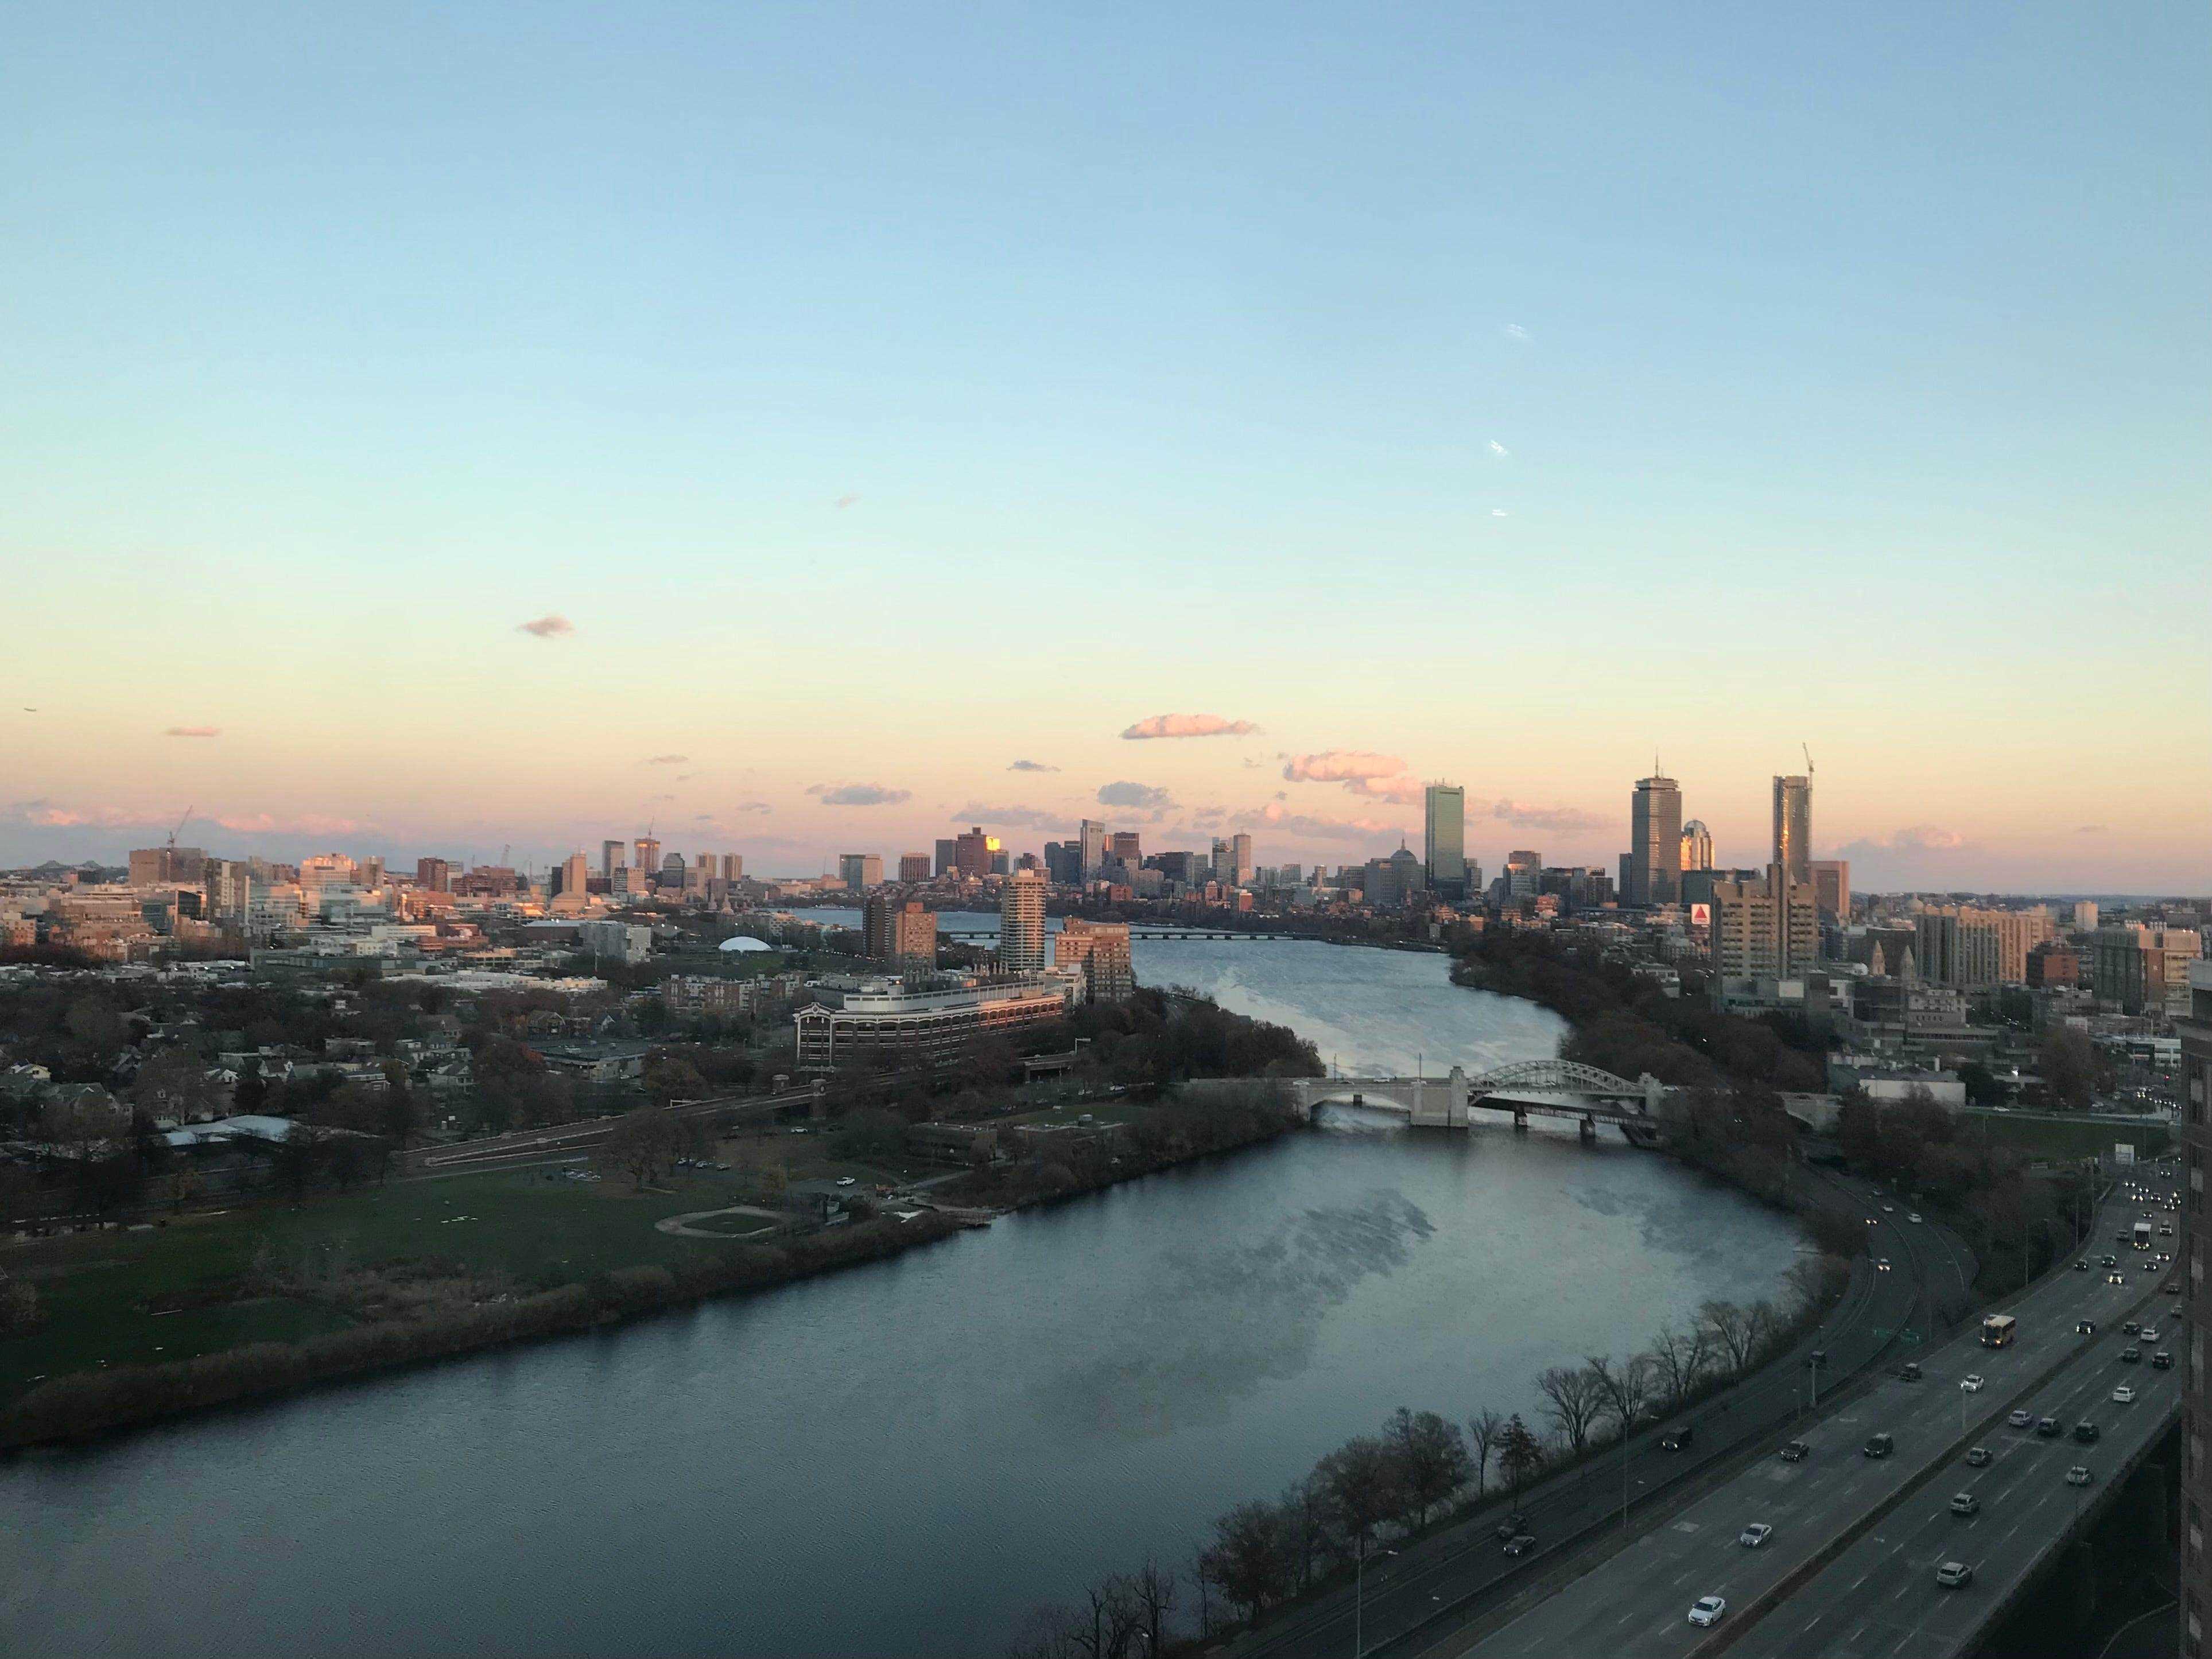 Ein Blick auf den Charles River und die Skyline von Boston von meinem Wohnheim aus.